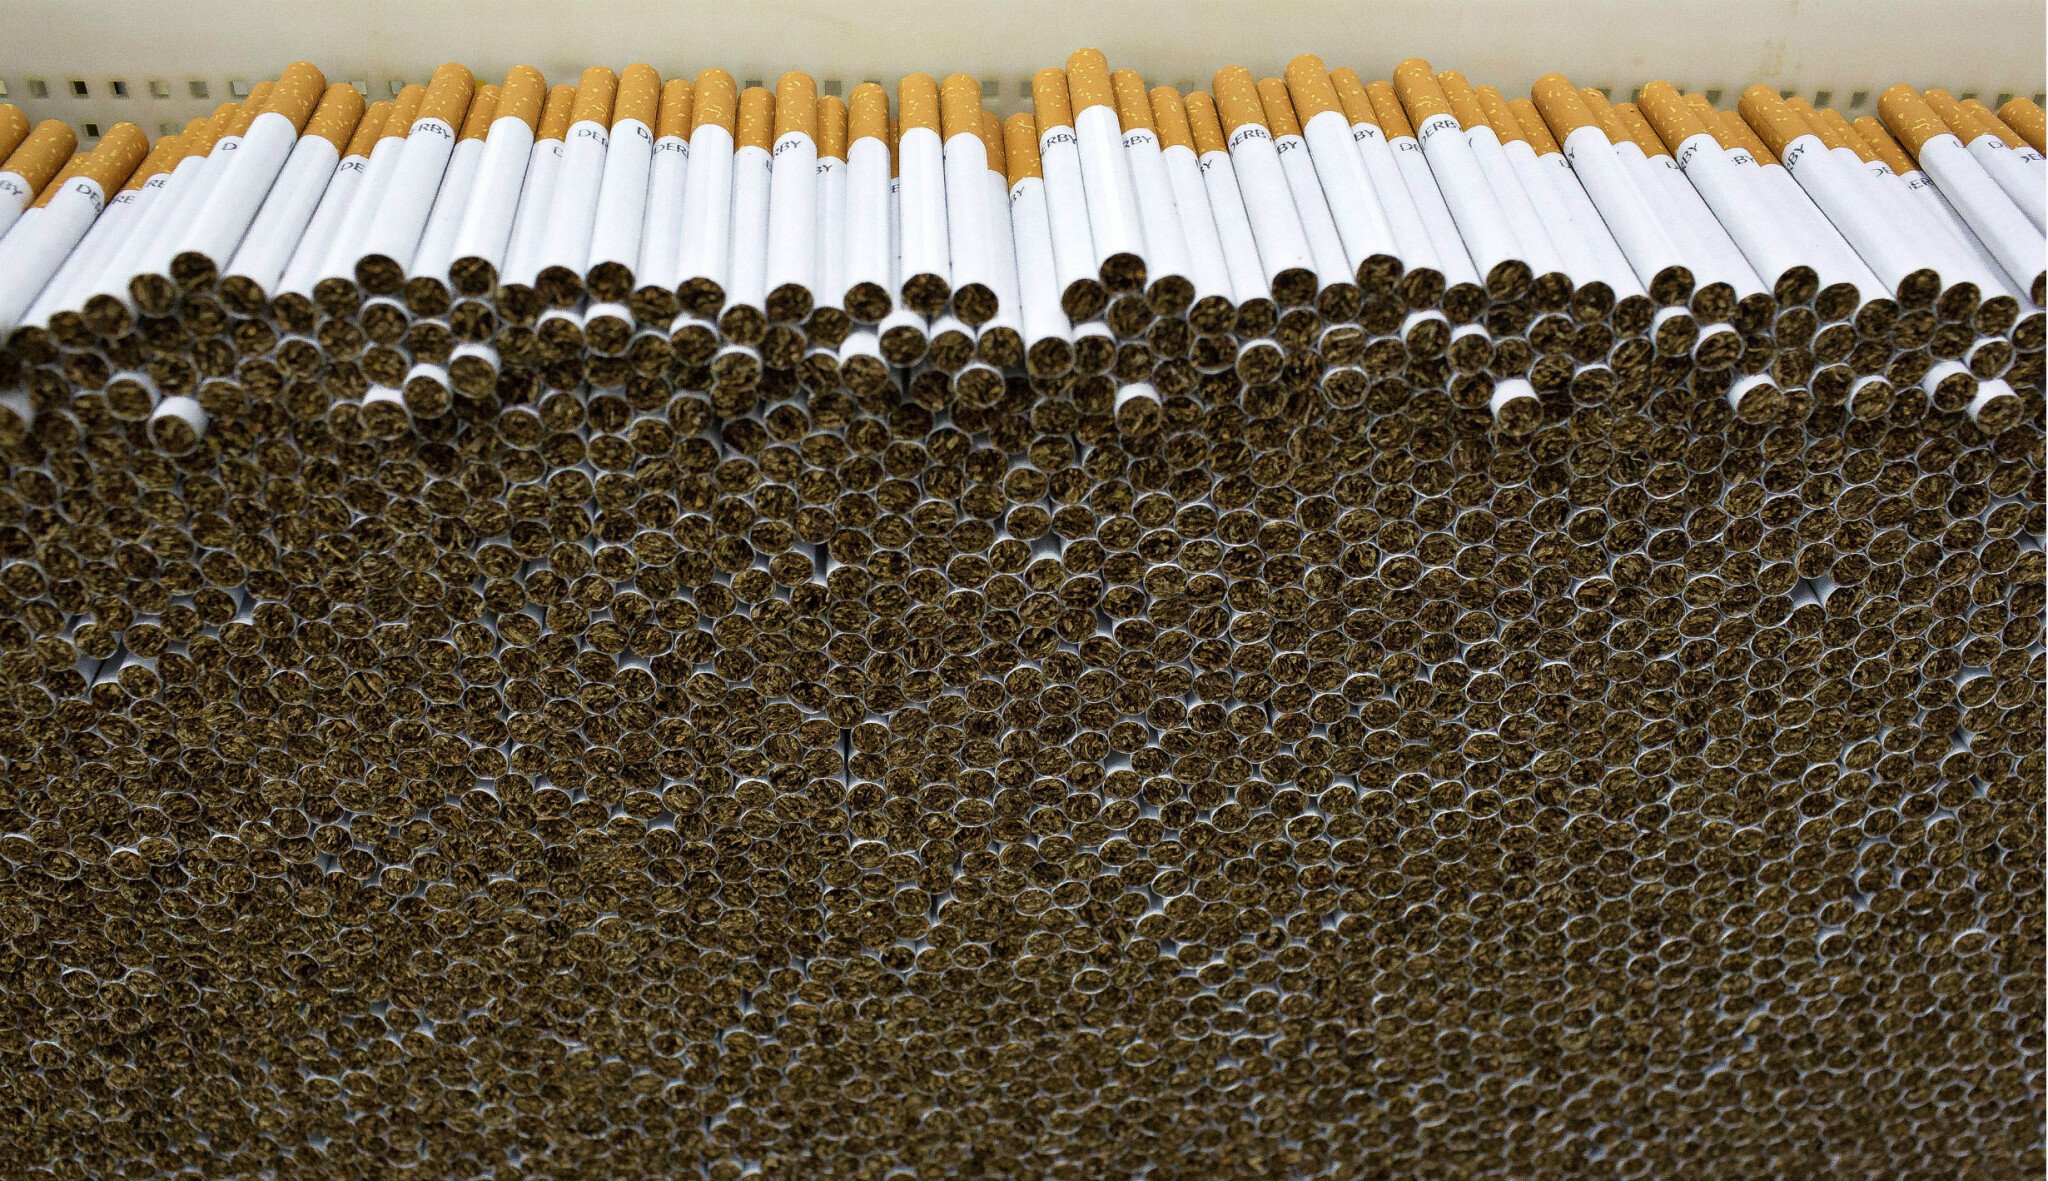 Tržby české odnože Philip Morris stouply téměř na 18 miliard